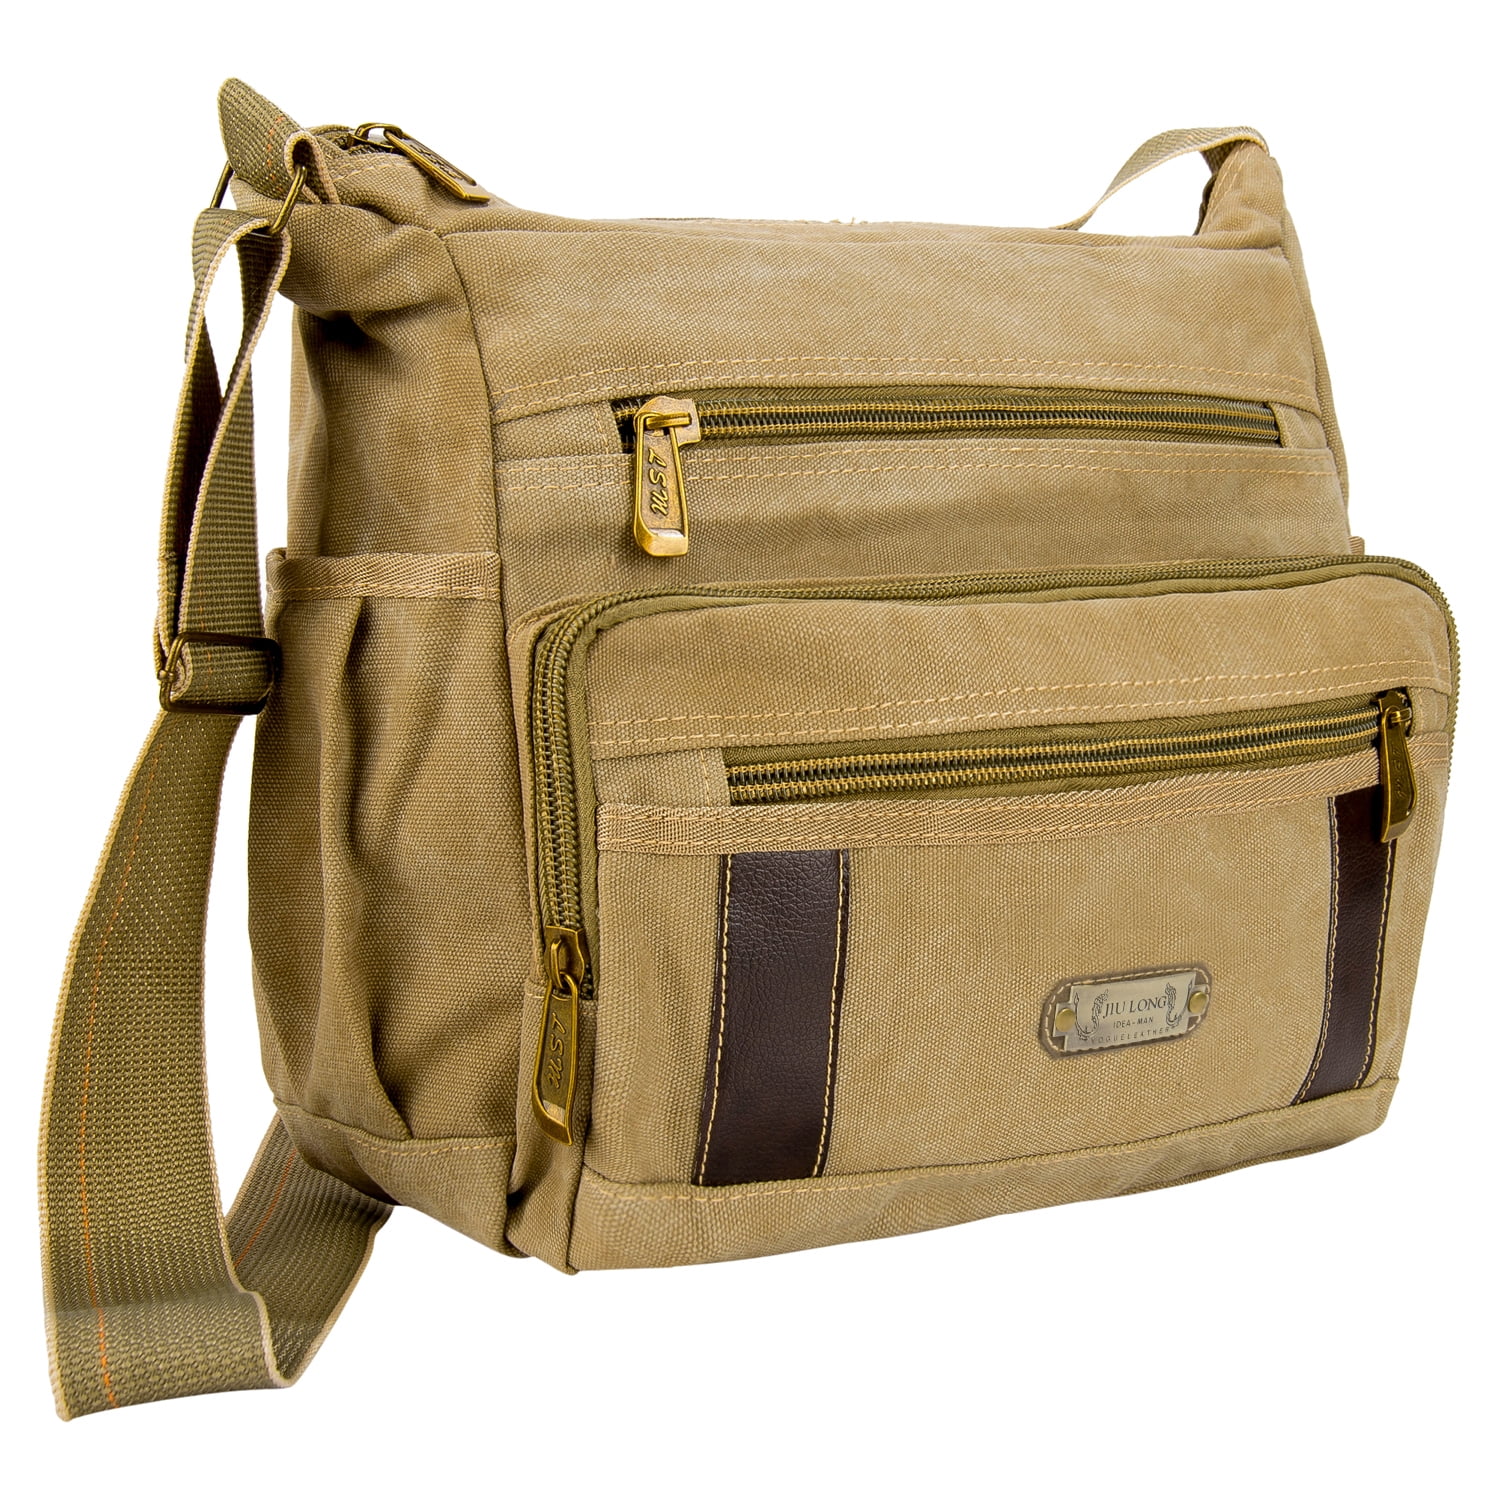 Holdfiturn Messenger Bag Men's Canvas Shoulder Bag Crossbody Single Shoulder Bag 13.3 Inch Laptop Bags for Working School Traveling Daily Use 